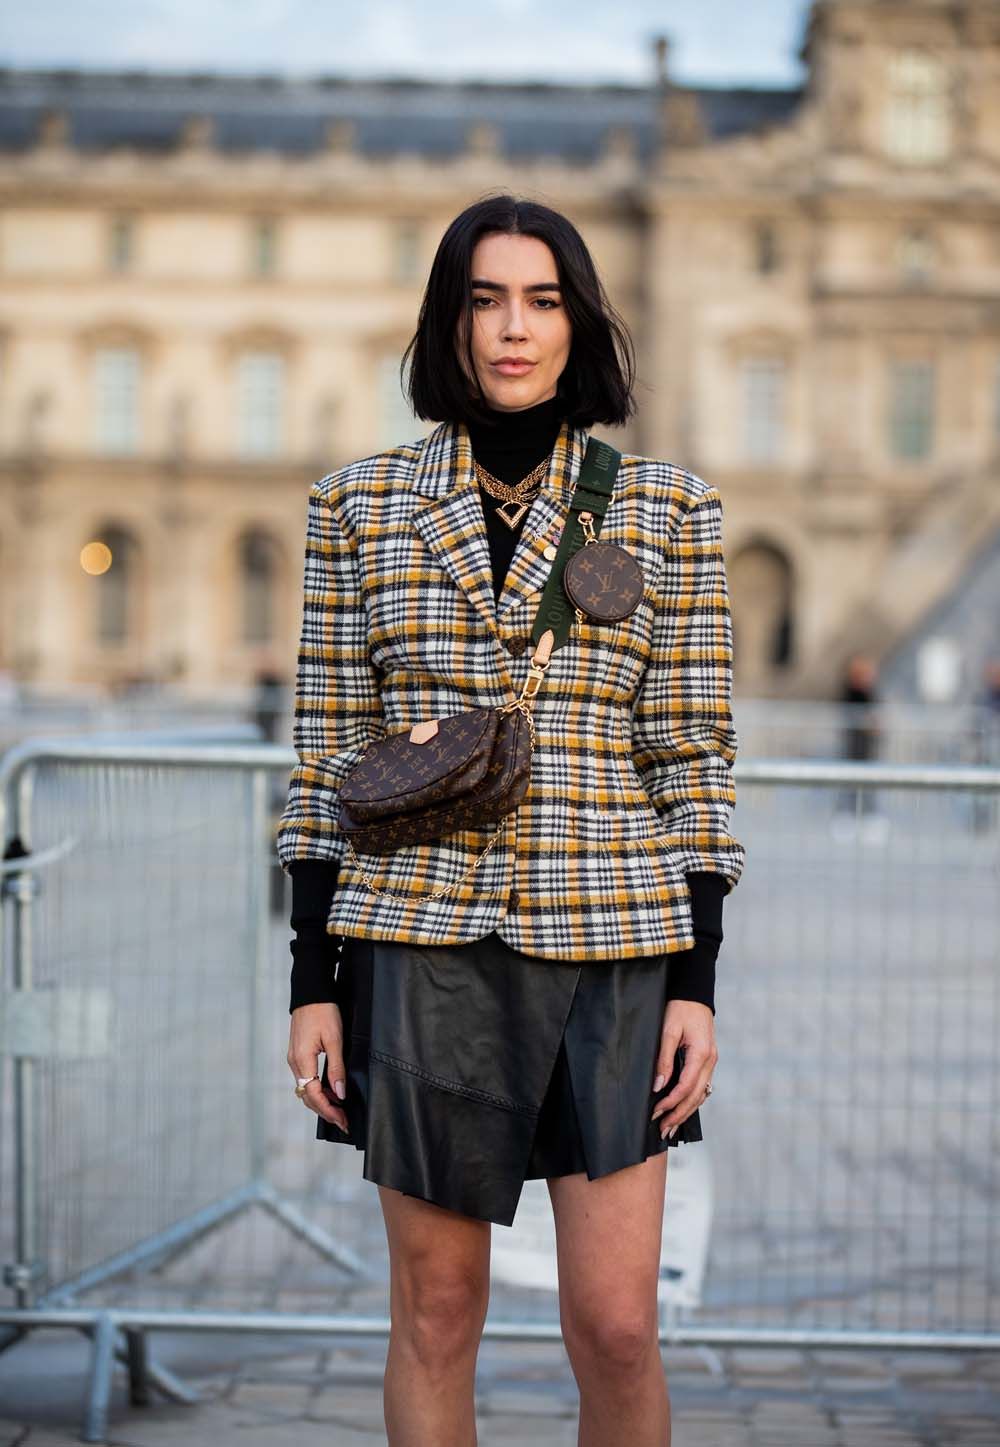 Borse inverno 2019, la Multi Pochette Louis Vuitton è moda pura